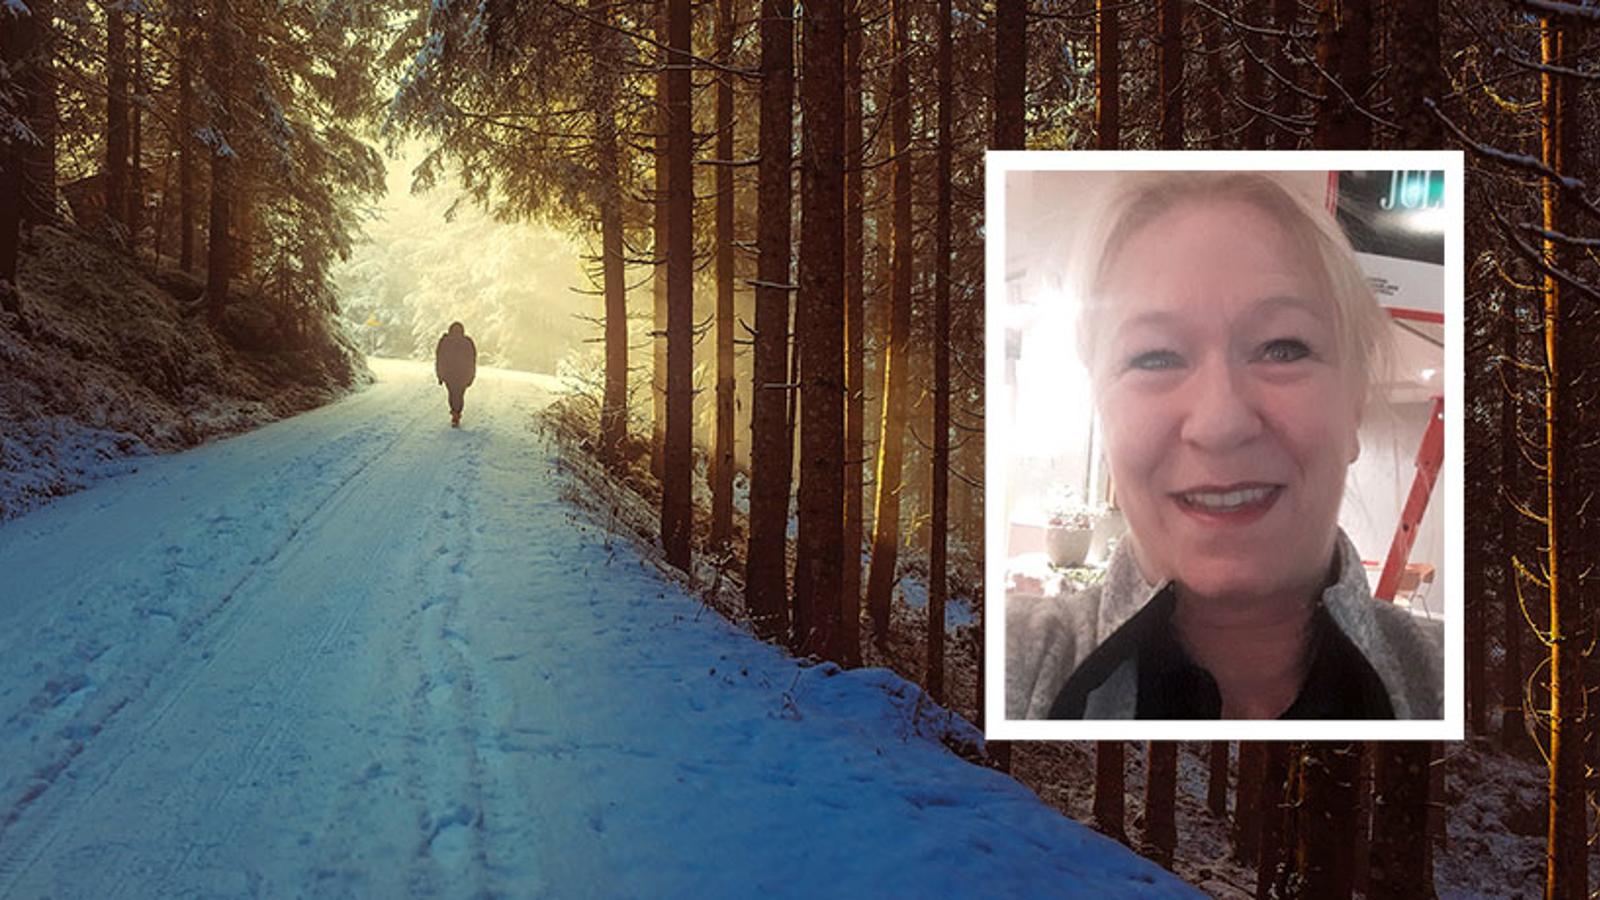 Till vänster: Ryggtavlan på en person som är ute och går på en snötäckt stig i skogen. Till höger: Lisbeth Östling